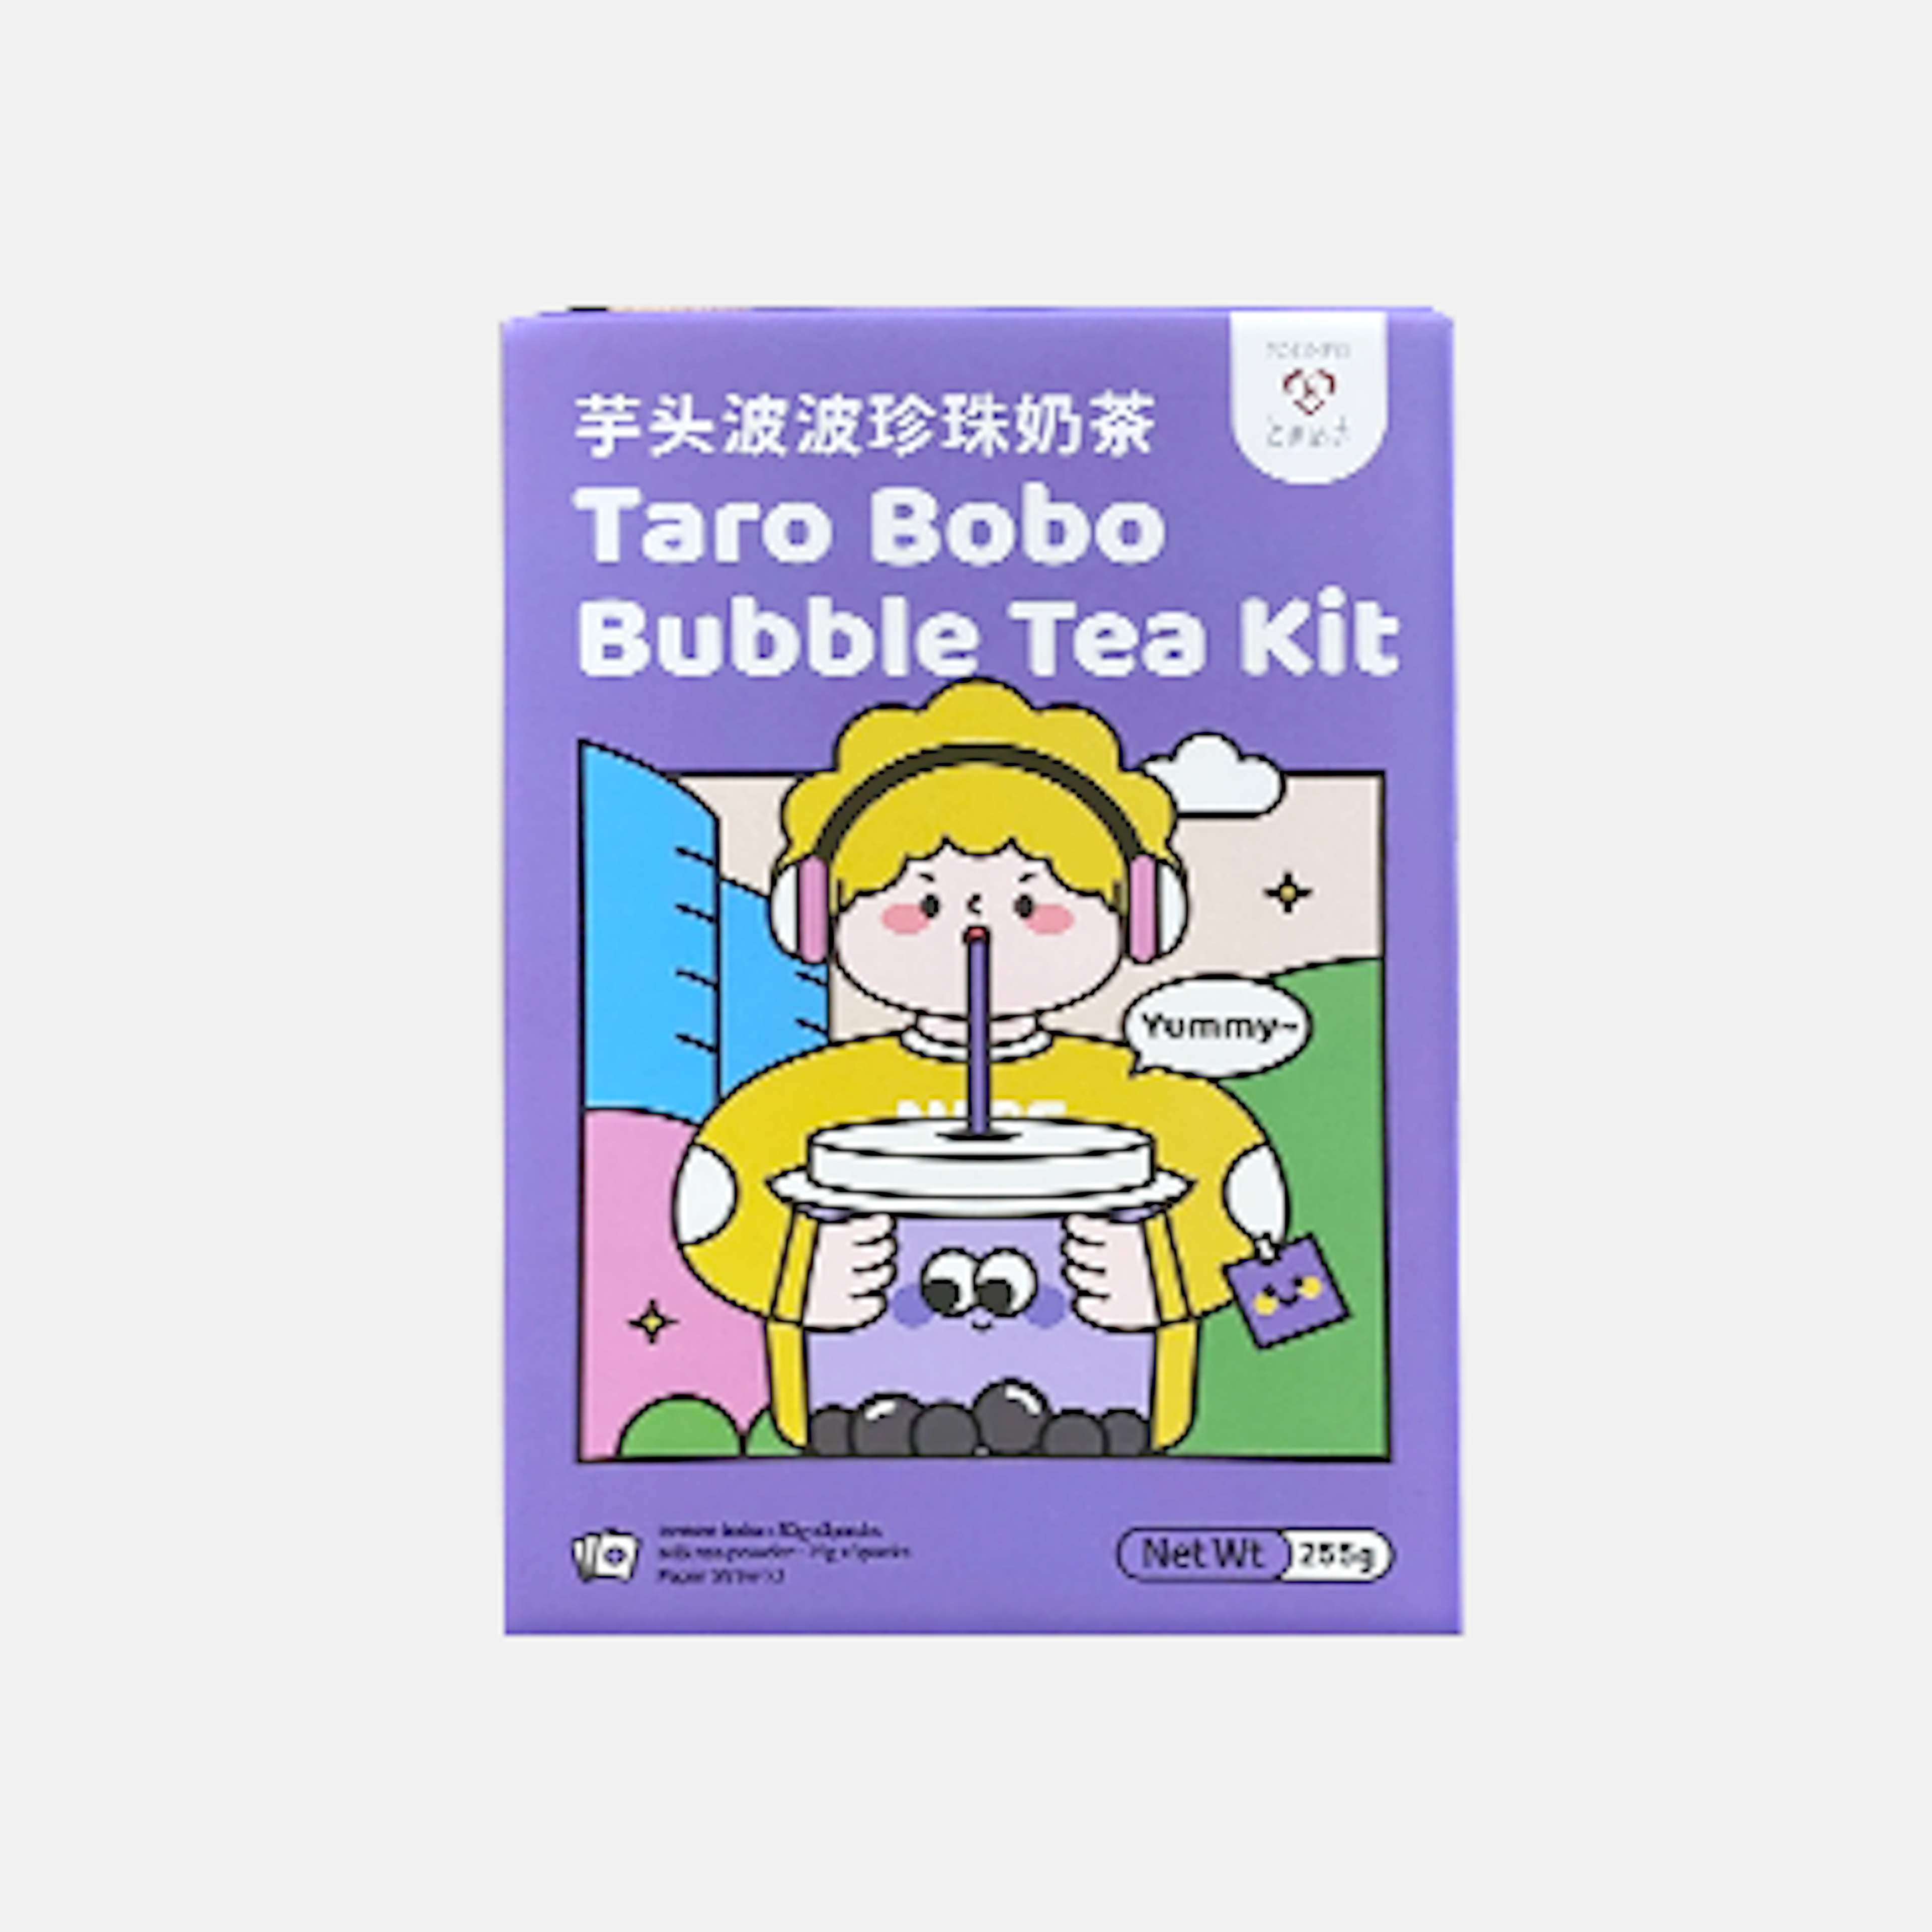 Tokimeki Taro Bobo Bubble Tea, perfekt für einen gemütlichen Nachmittag